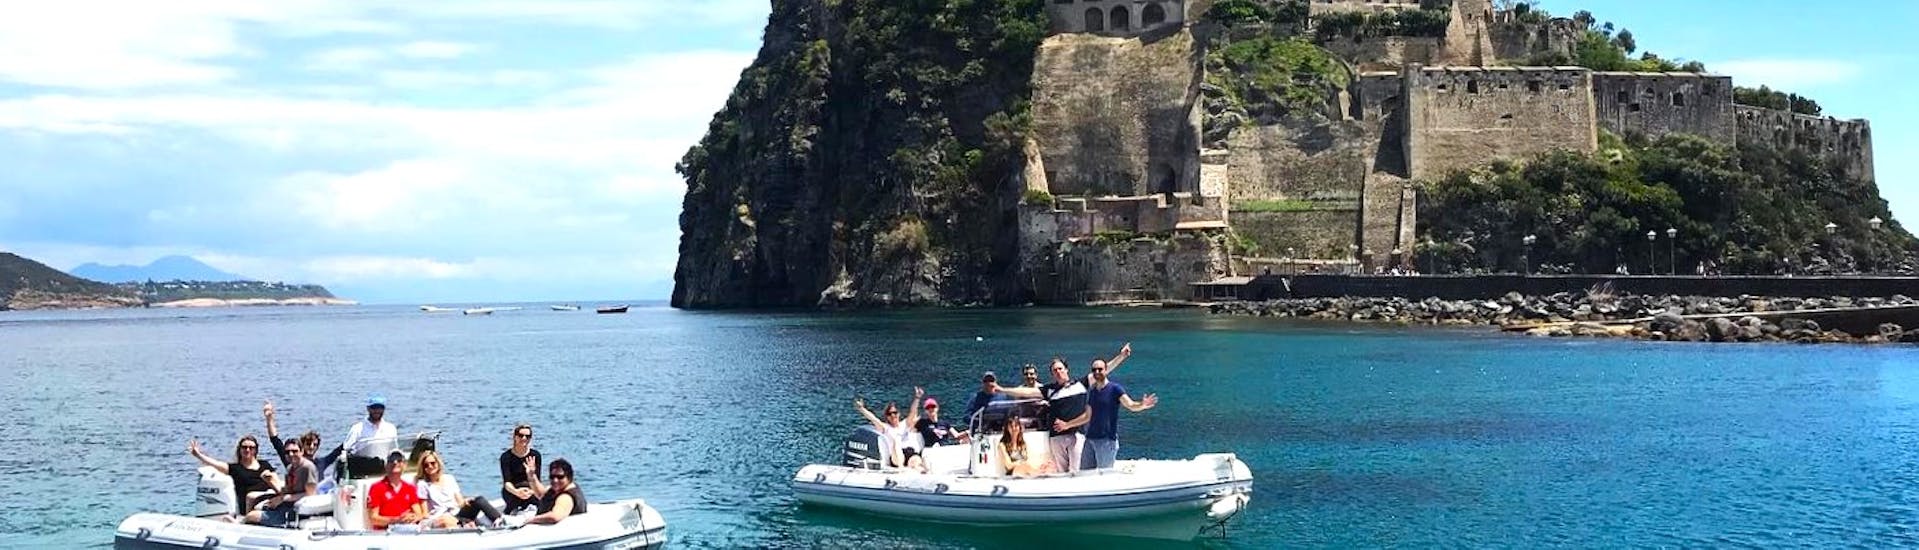 Vista dal mare del Castello Aragonese che puoi vedere durante la gita in gommone privato a Ischia e Procida con aperitivo e snorkeling organizzata da Seaside Napoli.